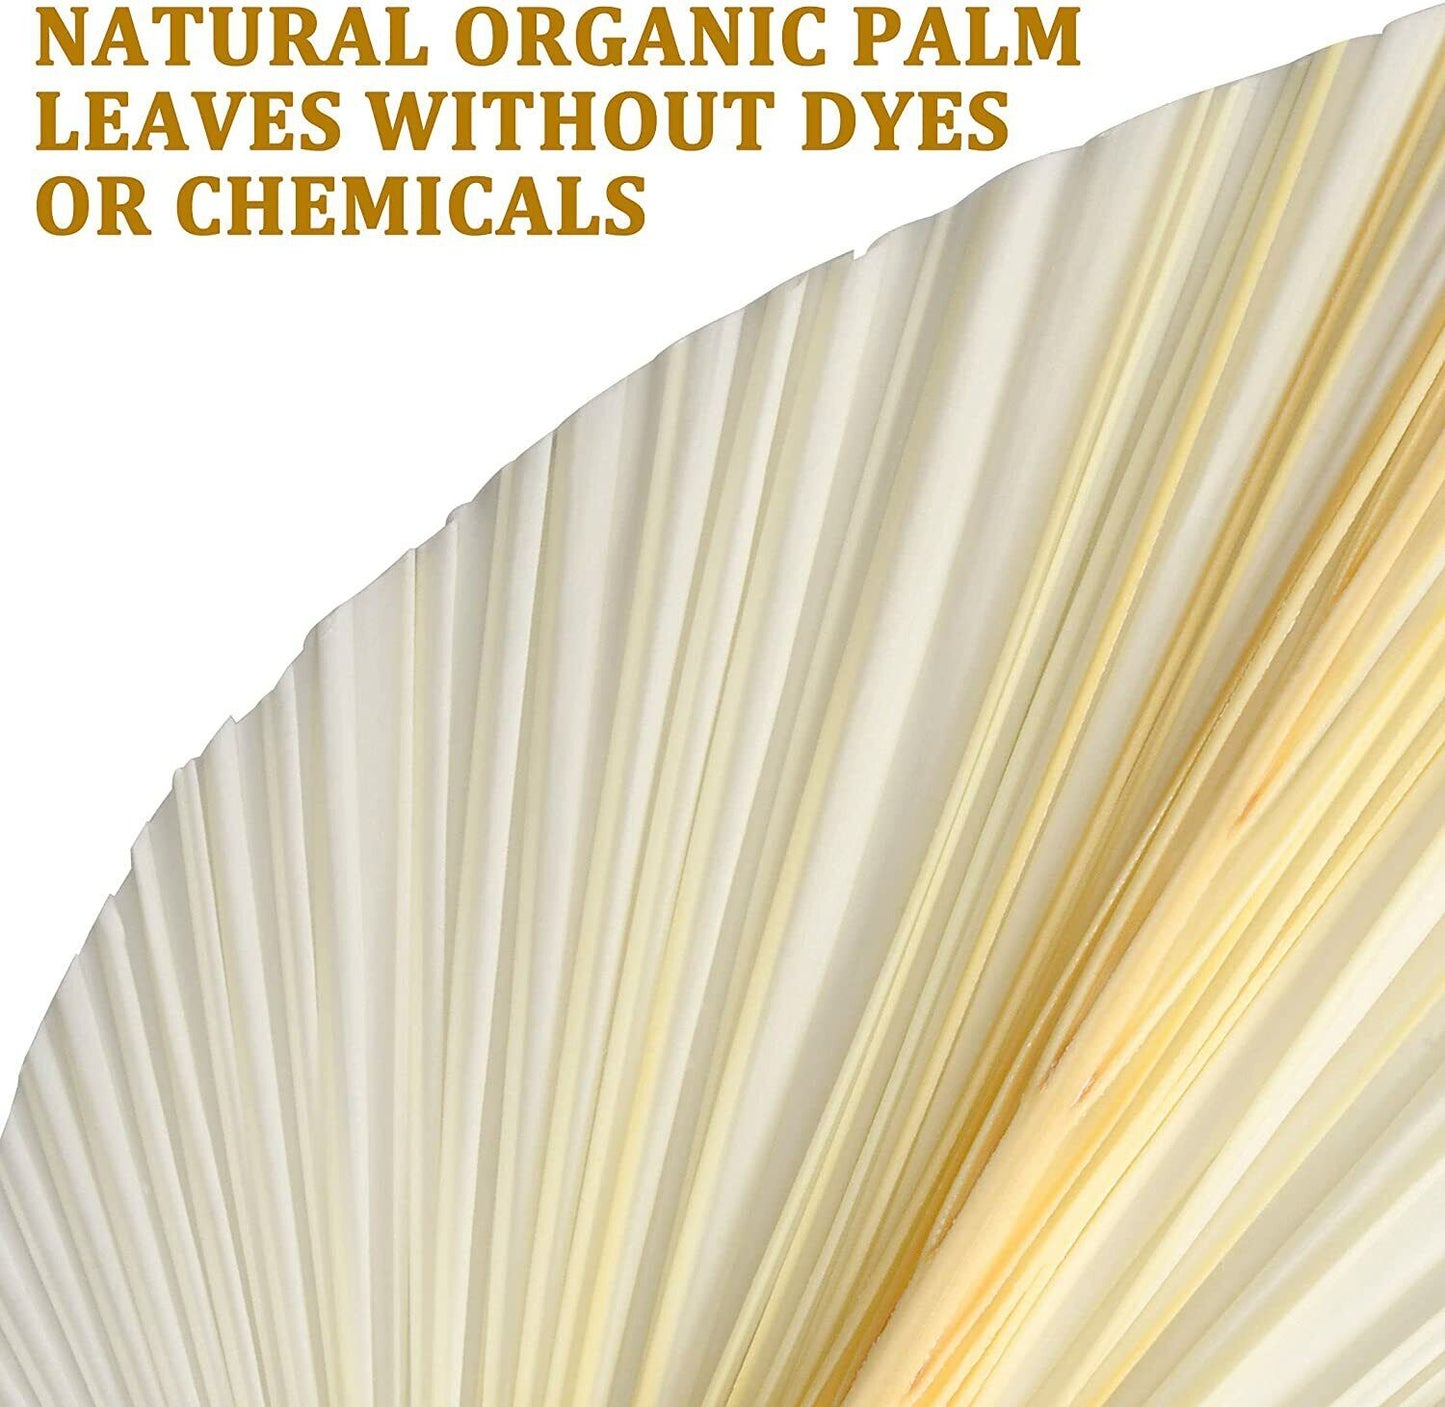 NEW Decor Boho 3 Pcs White Premium Large Dried Palm Leaves & Bonus E-Book